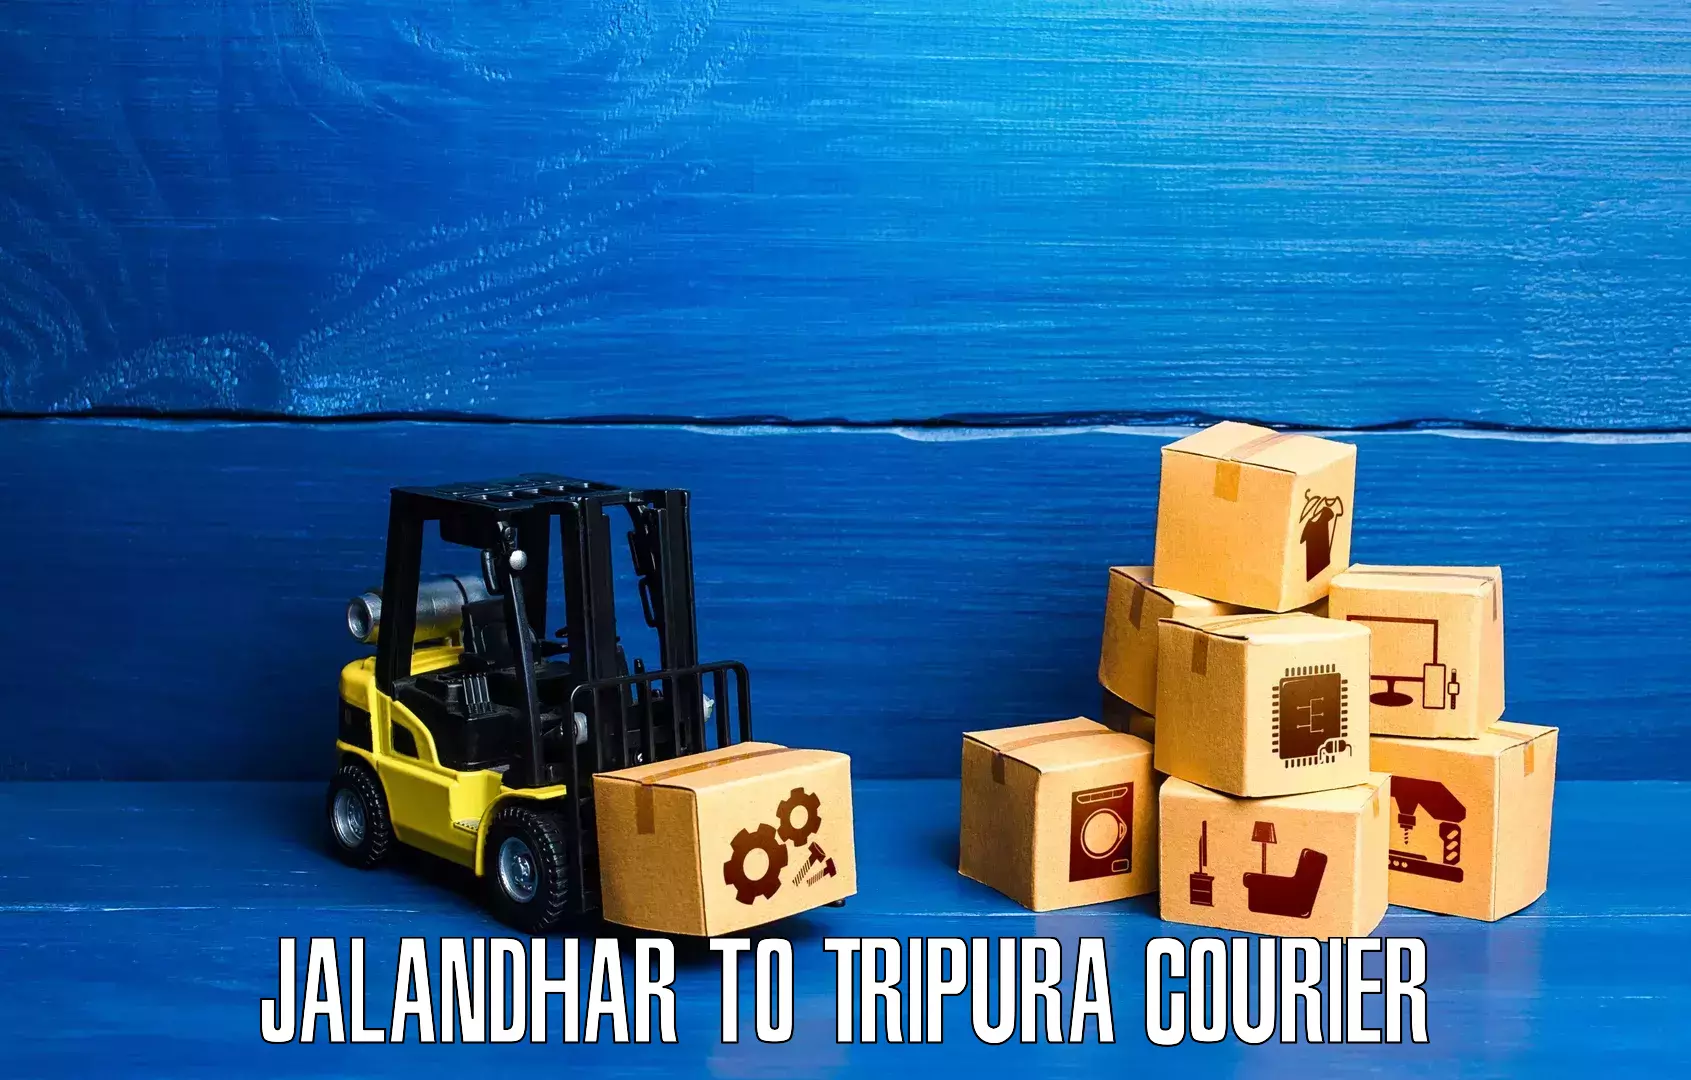 Digital courier platforms Jalandhar to Manu Bazar